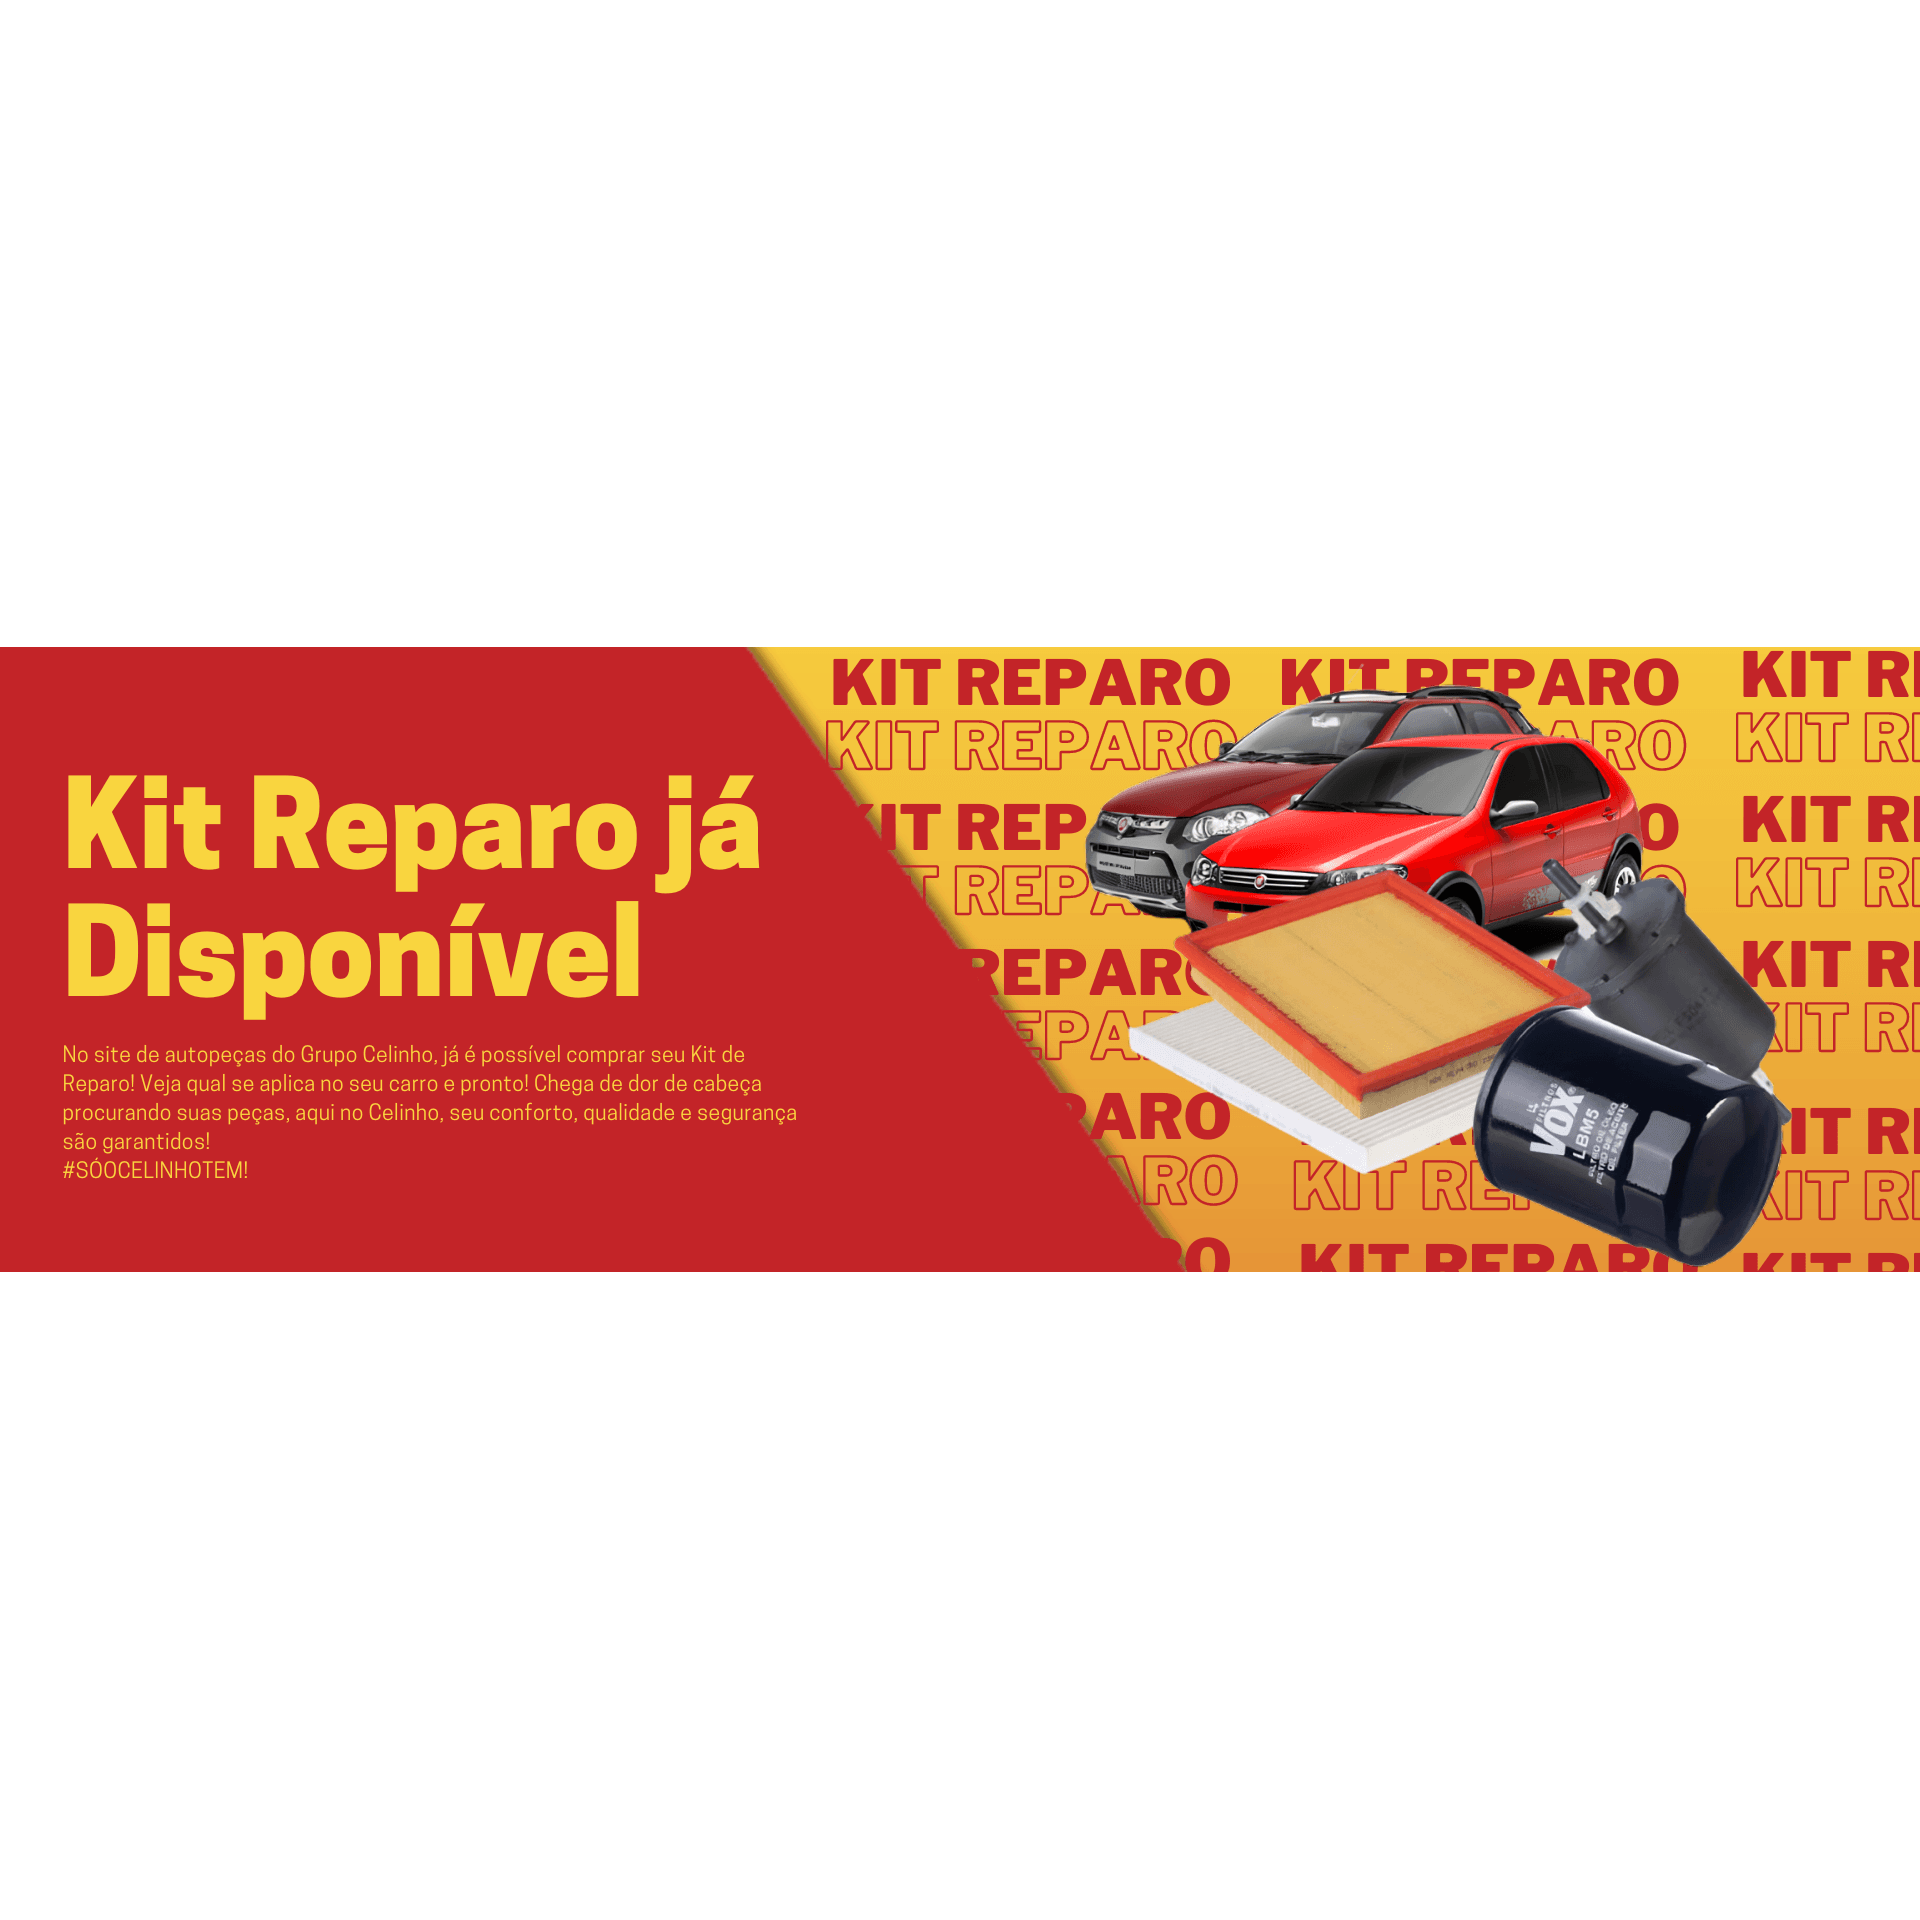 Kit de Reparo, incluso Filtro de Óleo, Filtro de Combustível, Filtro de Ar, Filtro de Ar Condicionado, VOX Filters Original